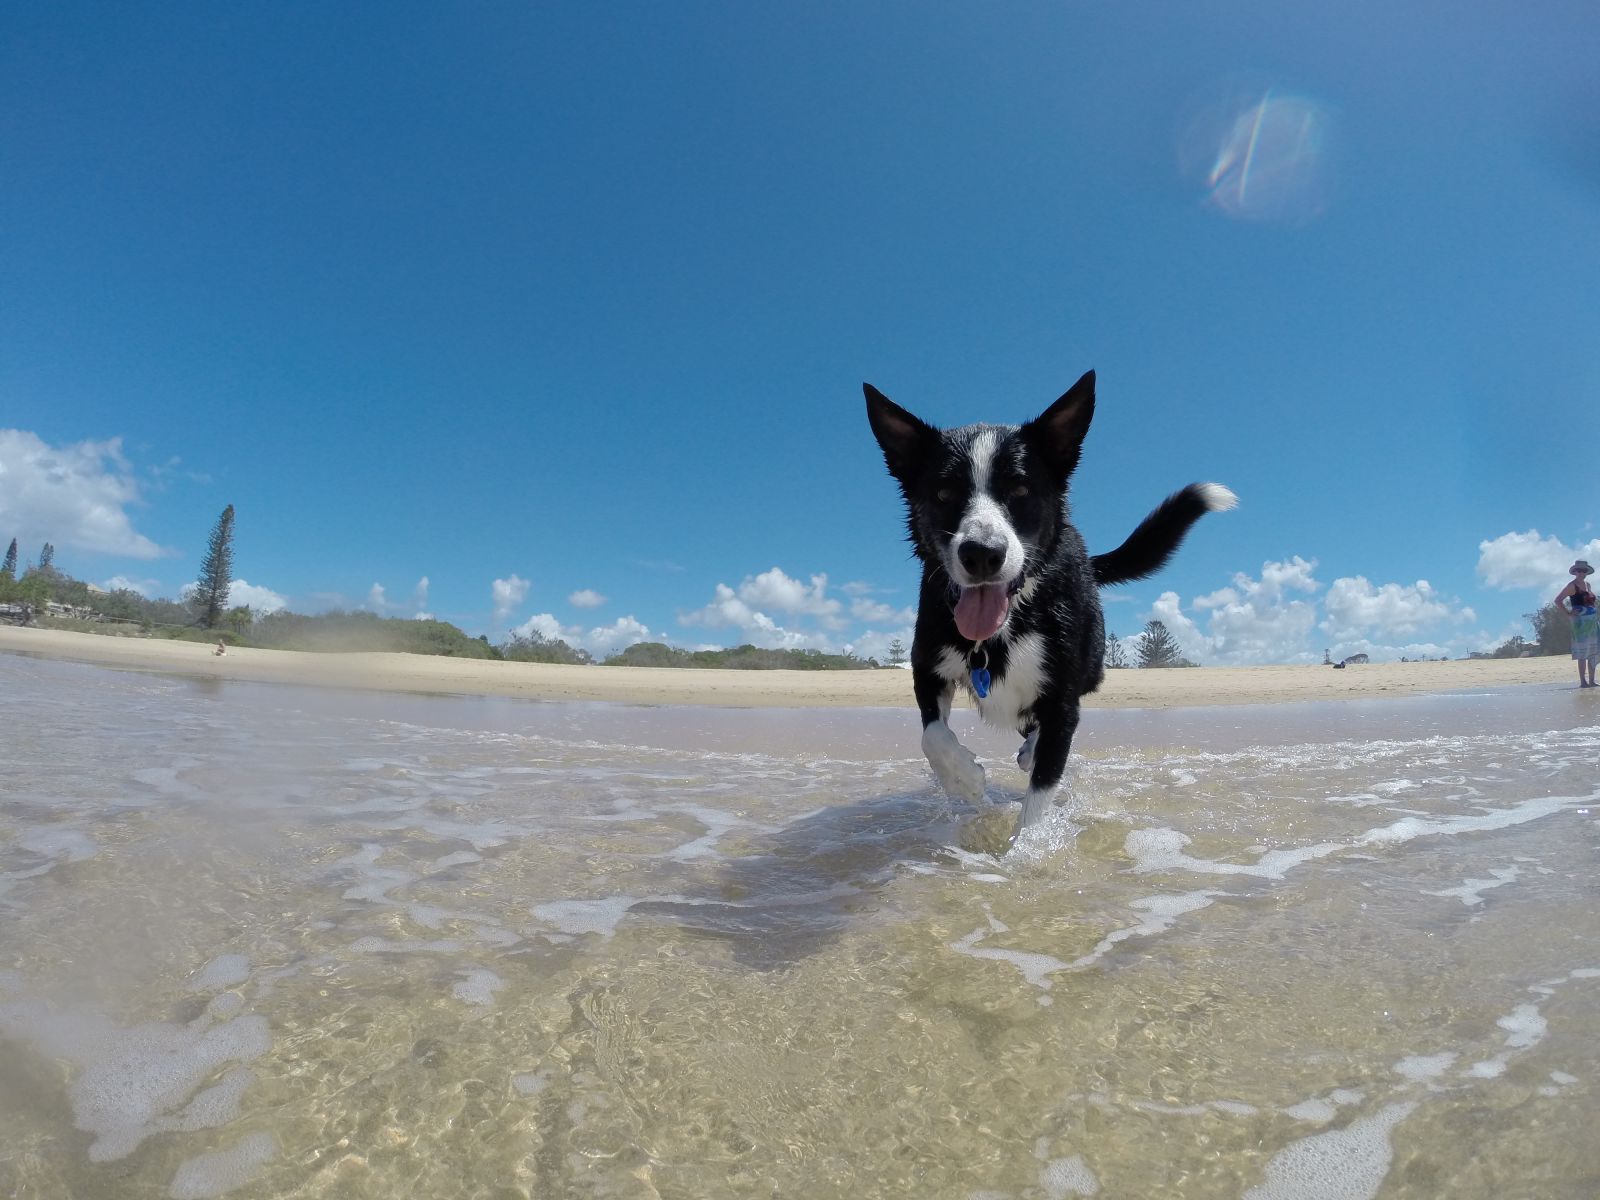 Los perros podrán acceder a las playas en invierno y será obligatorio llevar bolsas para excrementos y botellas para limpiar orines cuando paseen por espacios públicos de Santa Eulària